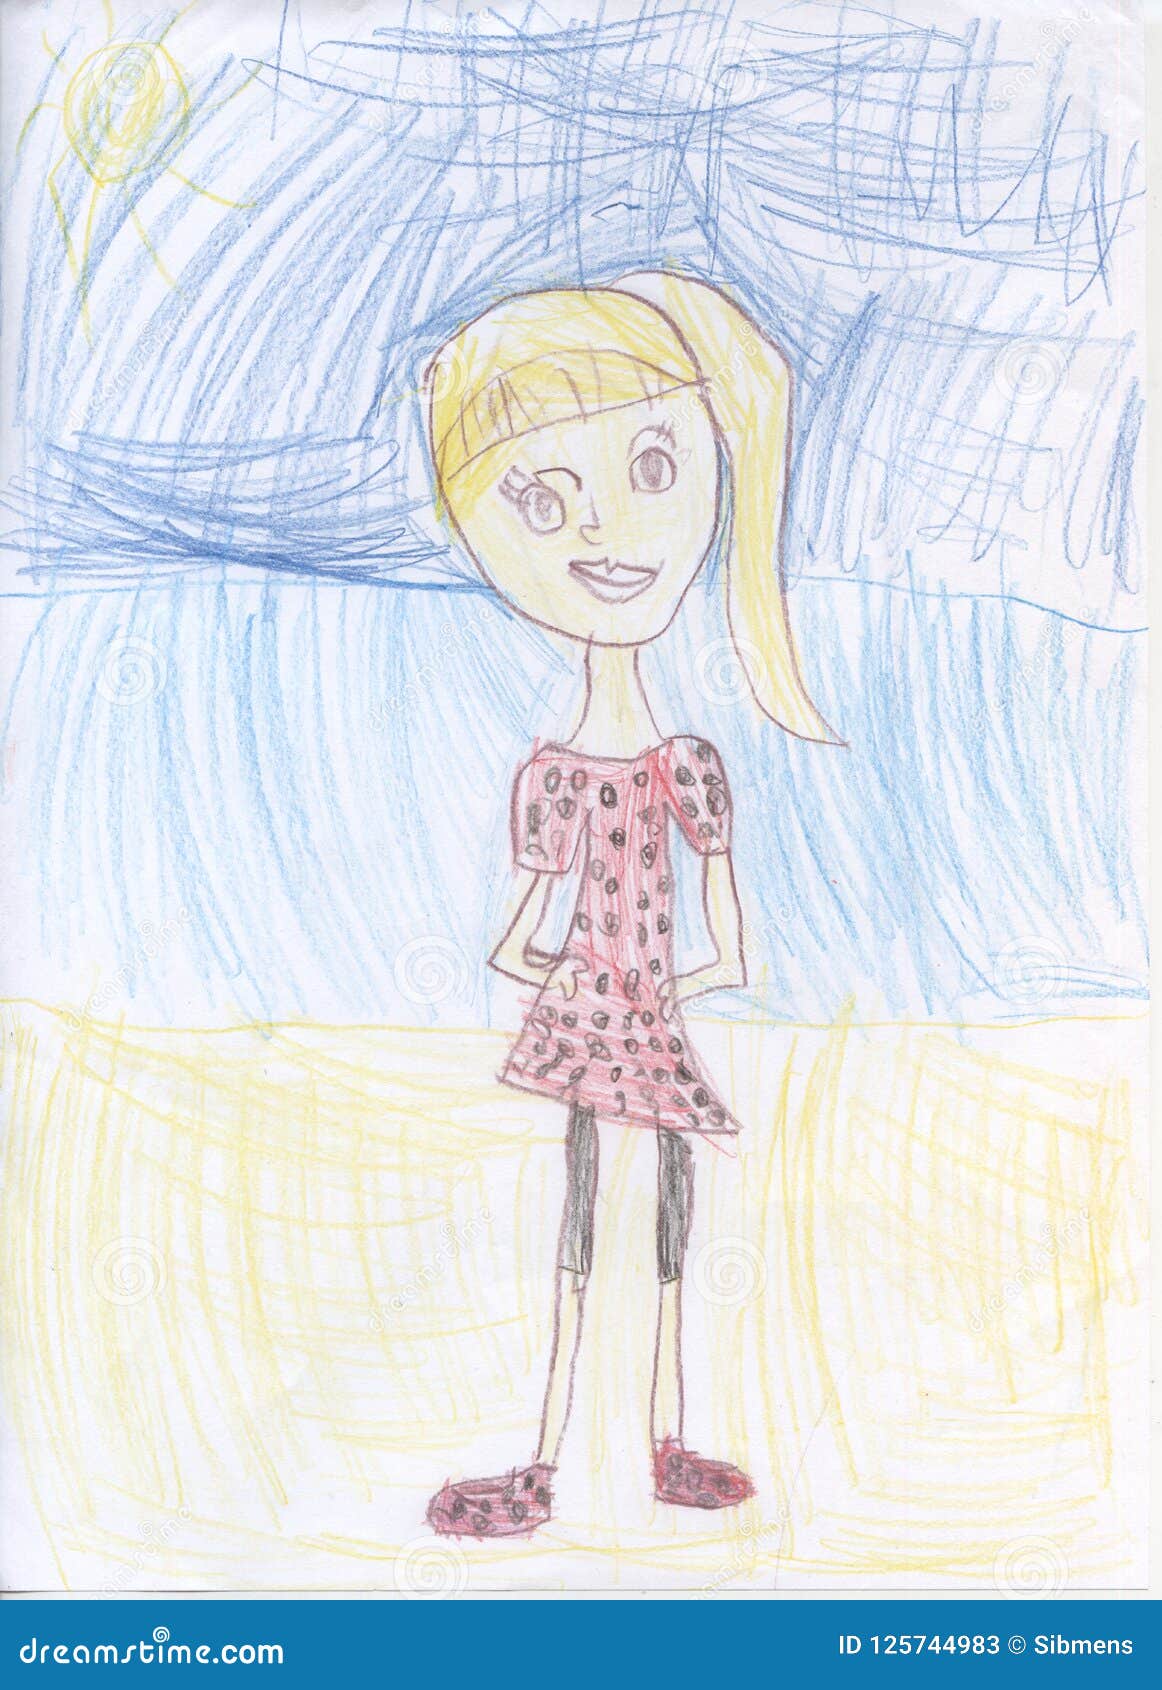 Disegni A Matita Del S Dei Bambini Ritratto Di Una Ragazza Illustrazione Di Stock Illustrazione Di Amore Capelli